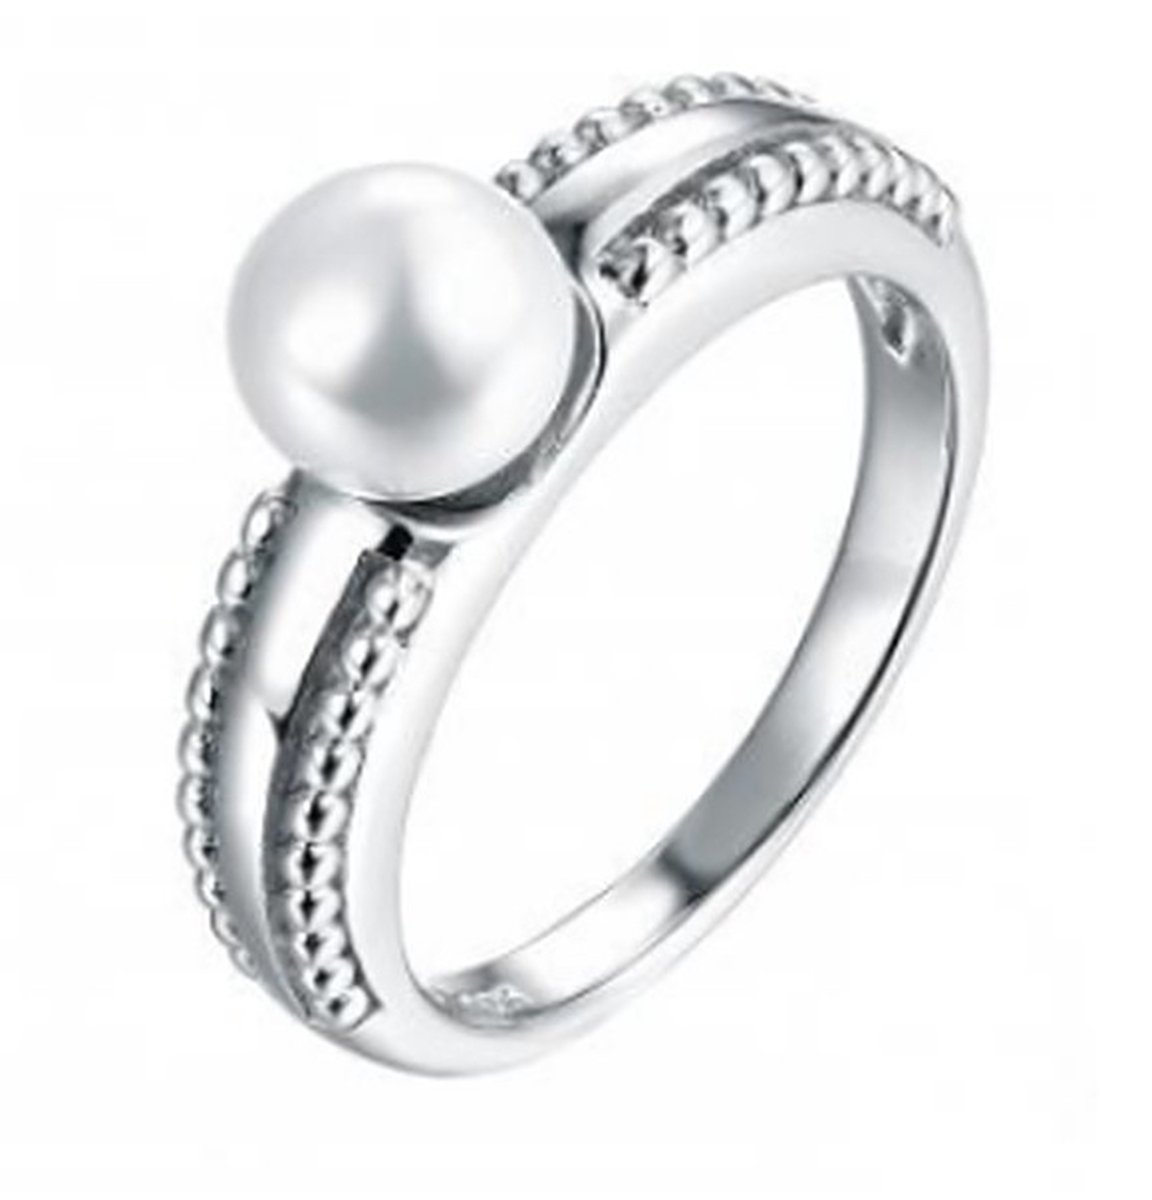 N3 Collecties 925 Sterling Zilveren Wit Natuurlijke Parel Ring Voor Vrouwen